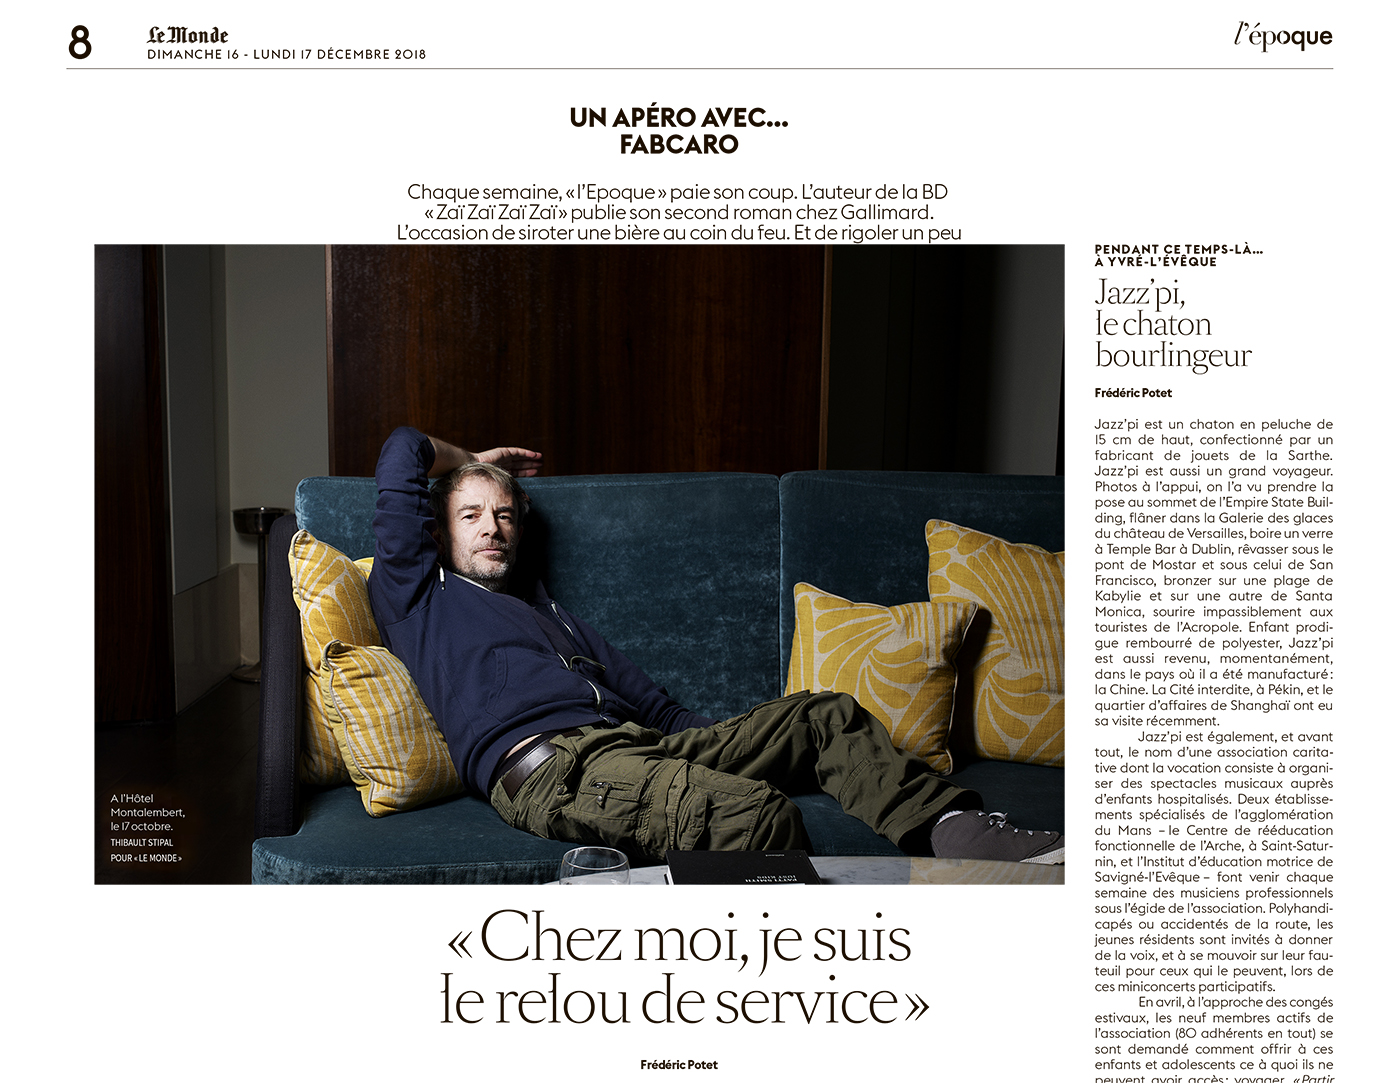 Thibault Stipal - Photographer - Le Monde - 1